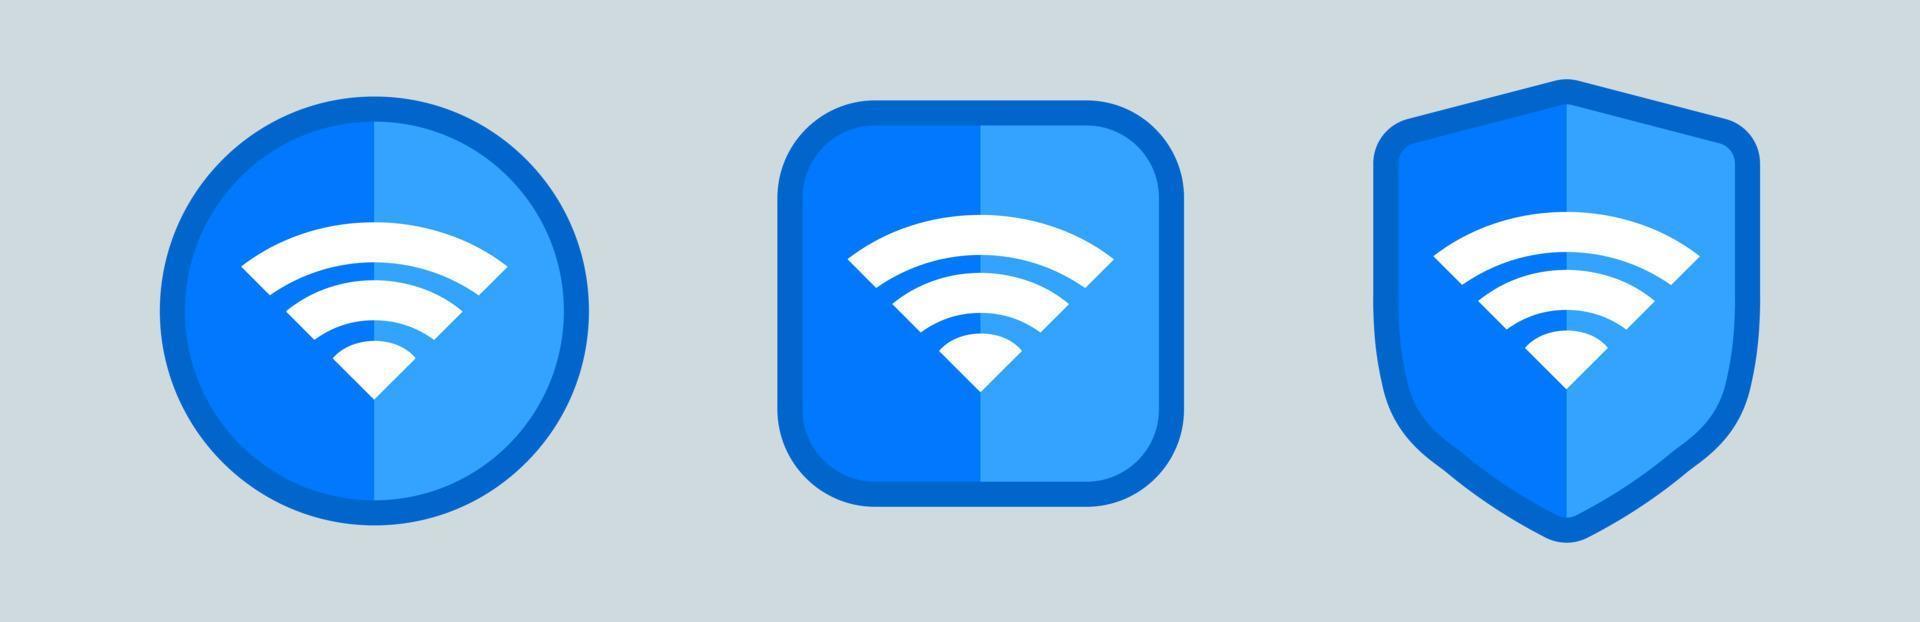 drahtloses und wlan-symbol oder zeichen für fernzugriff auf das internet. Verschiedene blaue WLAN-Icon-Sets. vektor